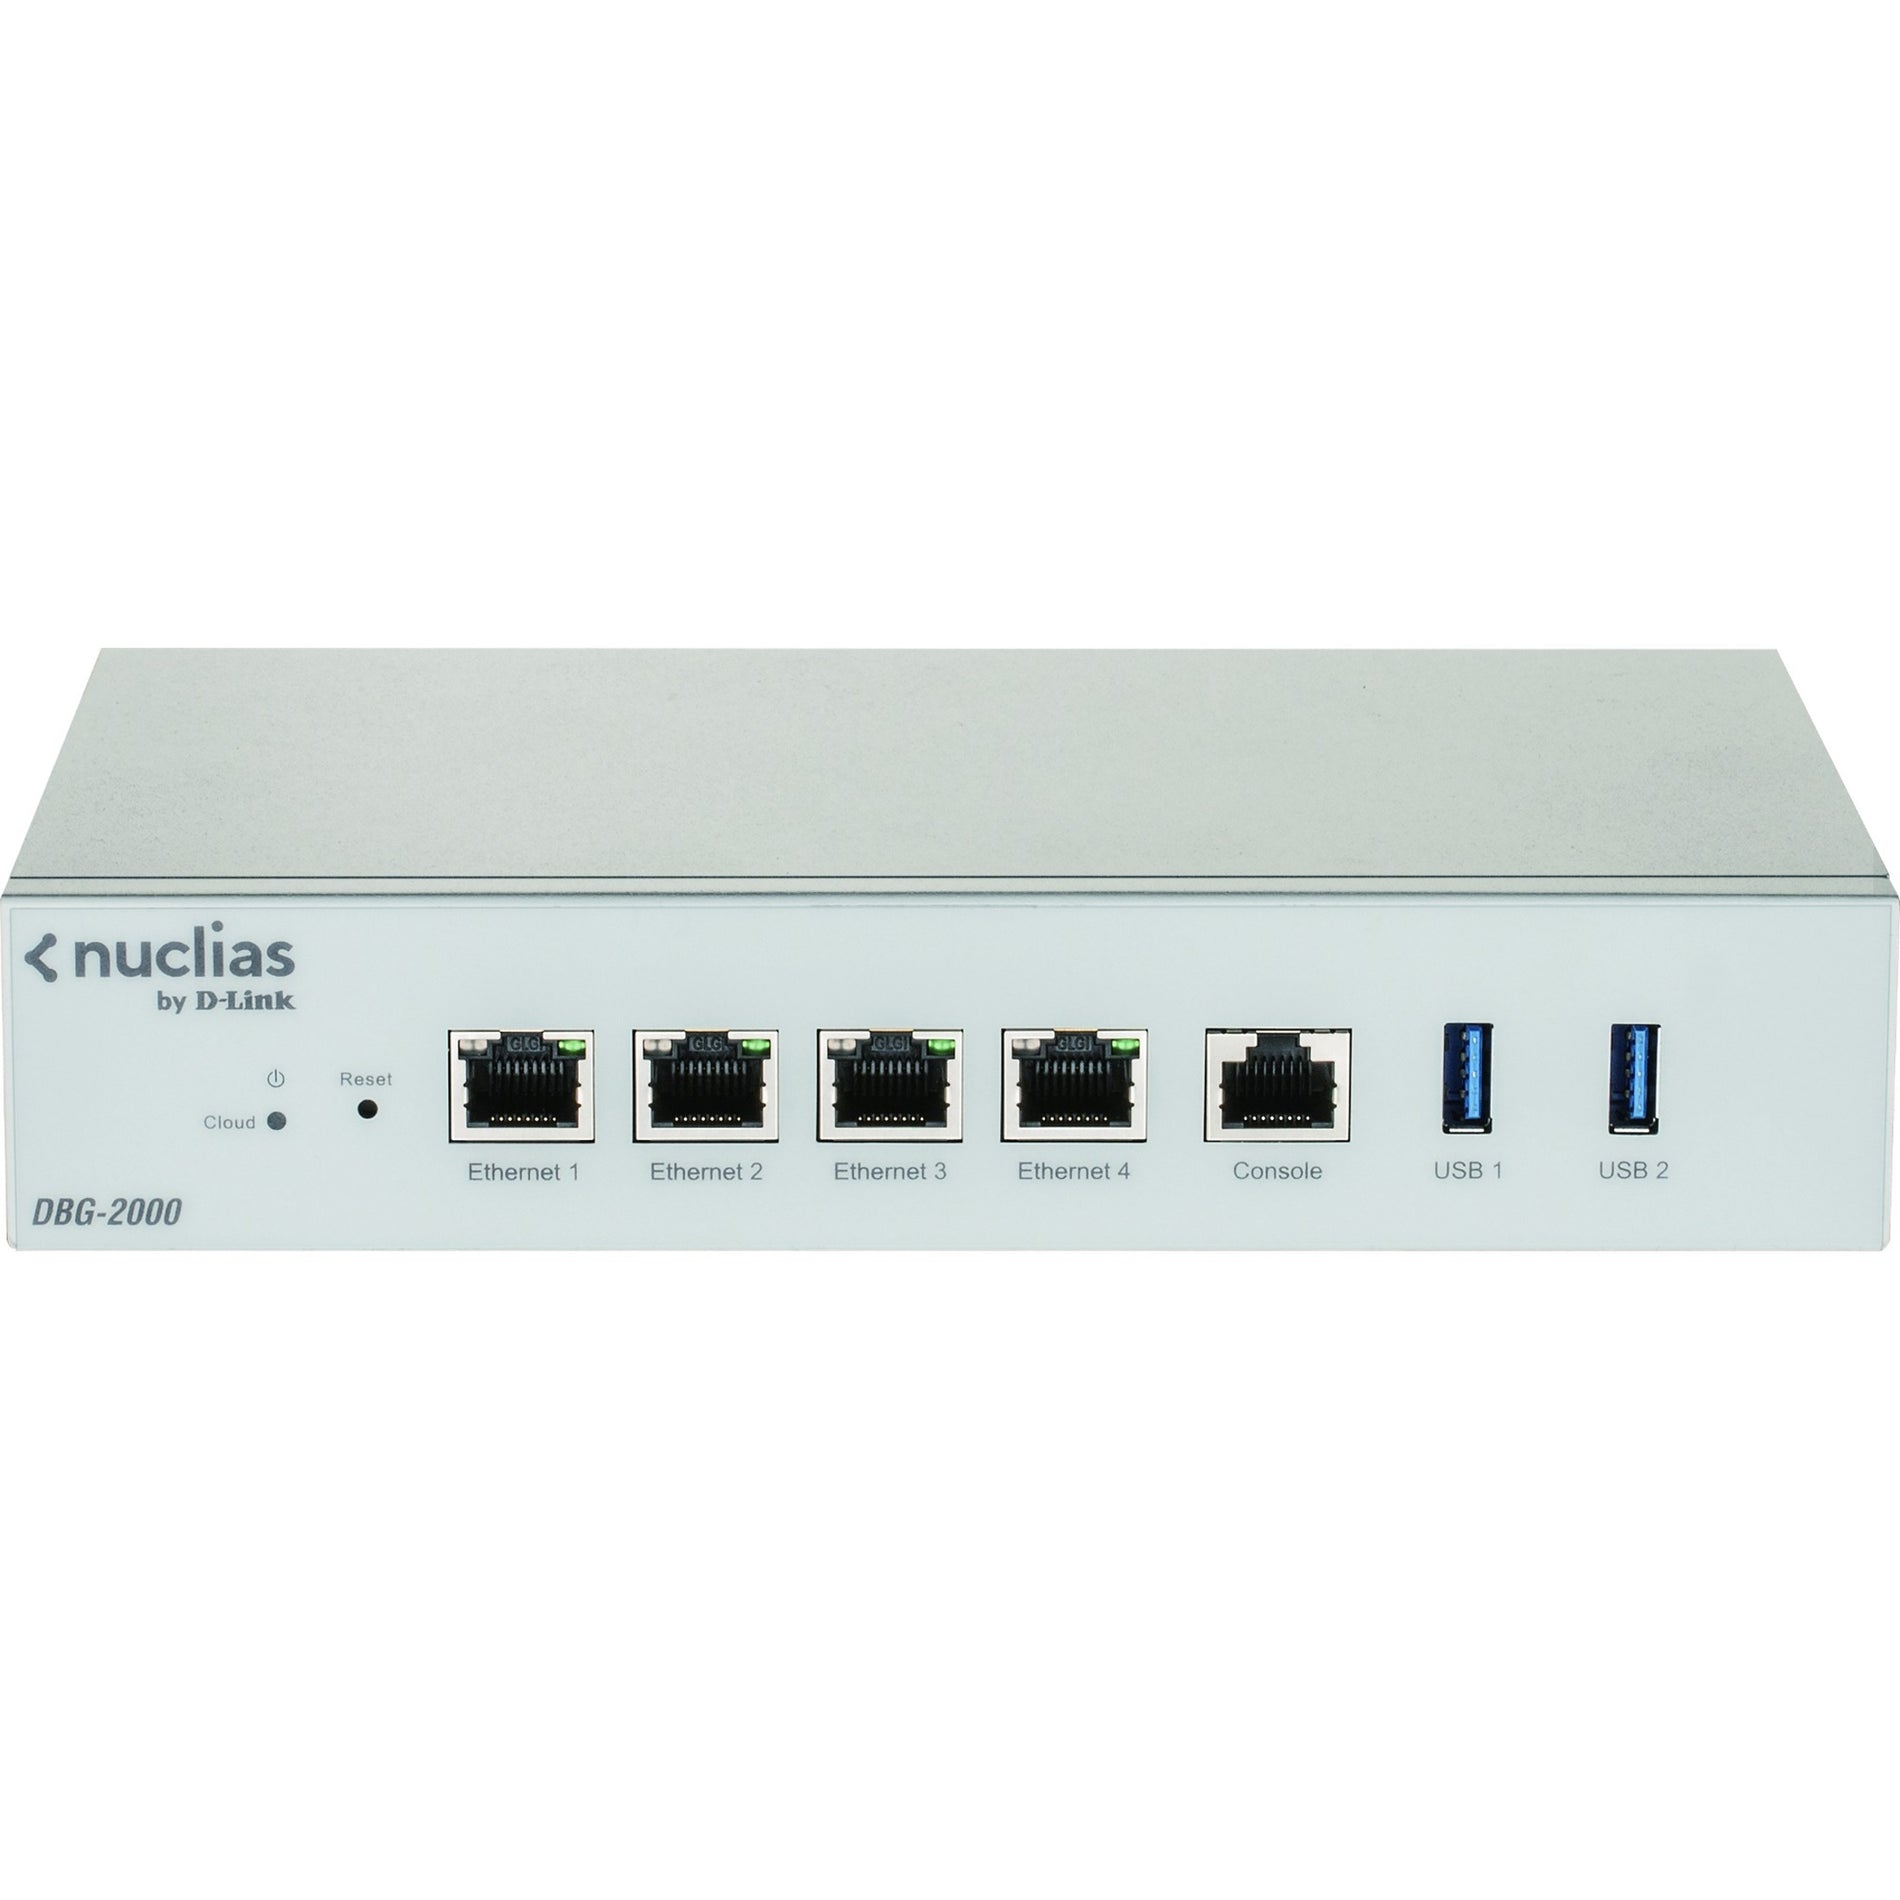 D-Link DBG-2000 Nuclias Cloud SD-WAN Security Gateway, Gigabit Ethernet, 4 Ports, Lifetime Warranty